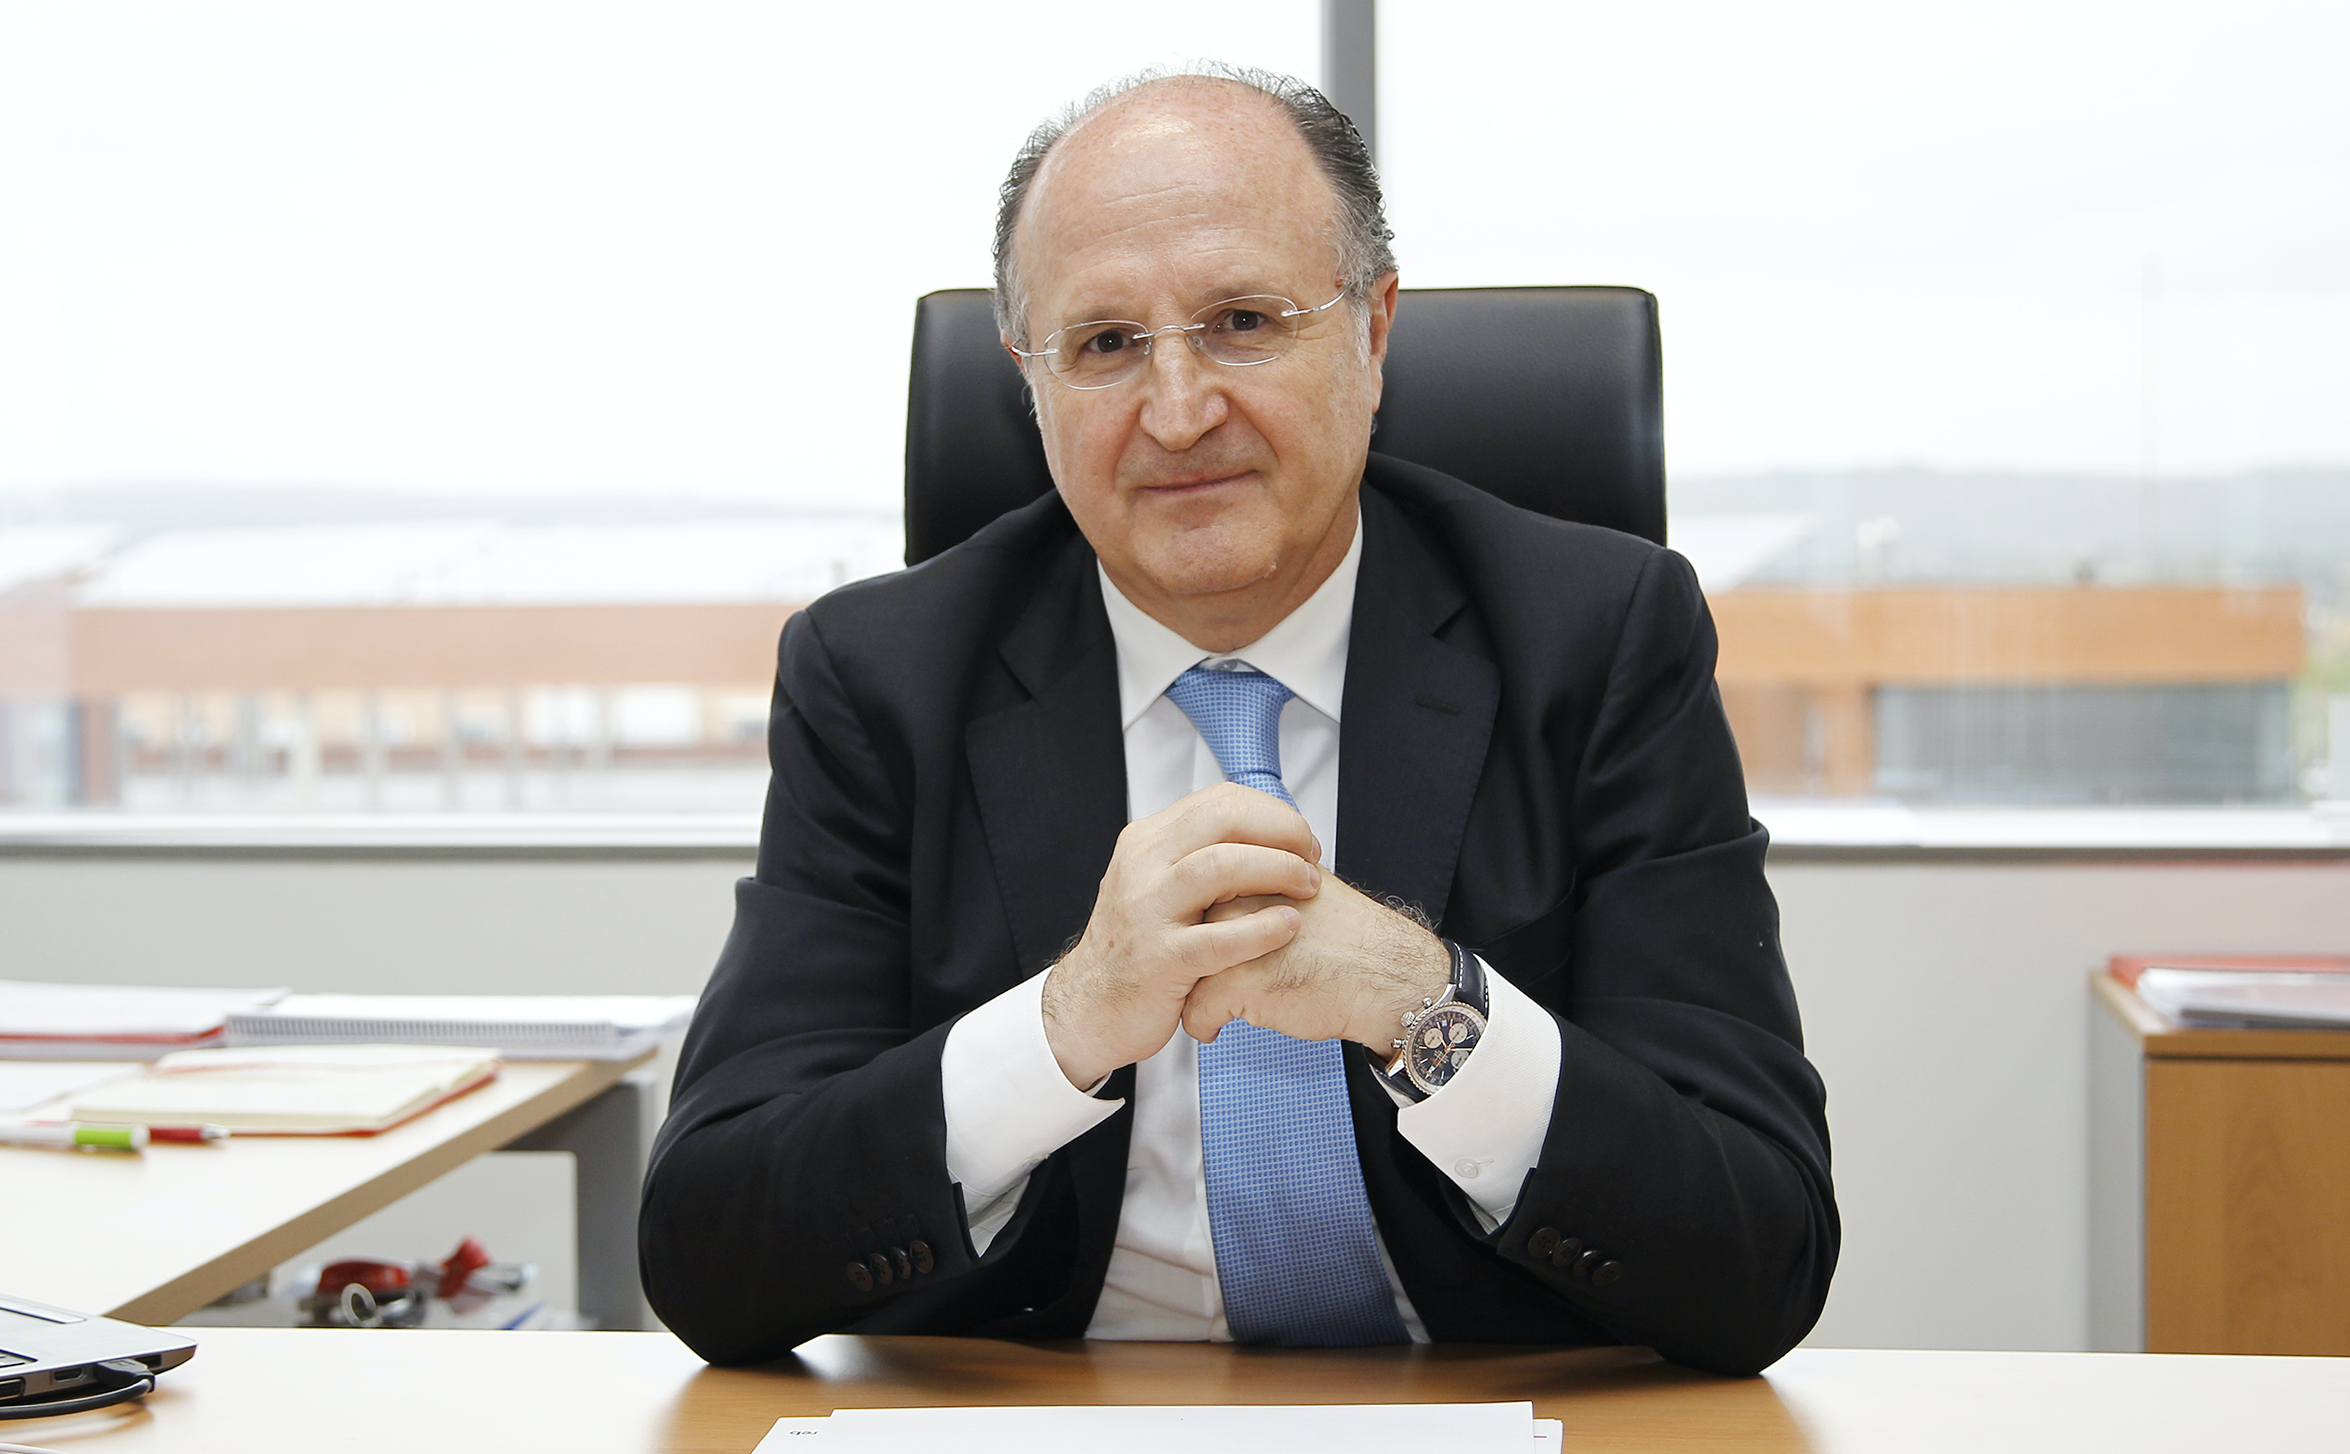 Altamira Asset Management nombra CEO para España y Portugal a Francesc Noguera